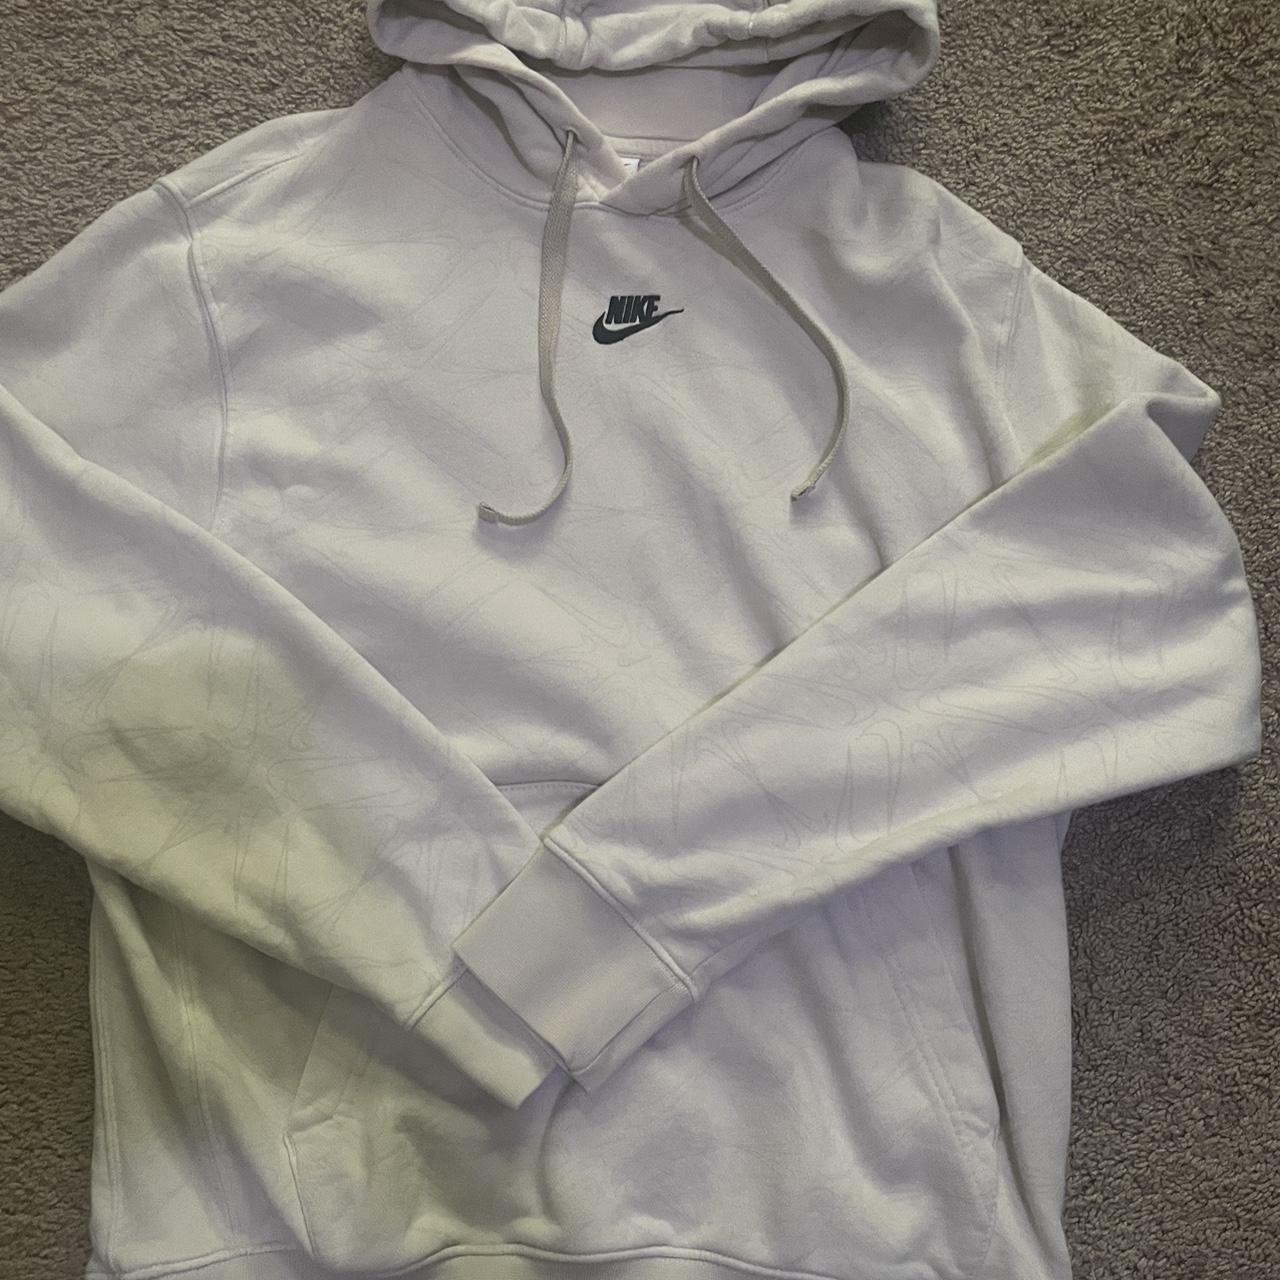 Cream Nike hoodie size medium - Depop